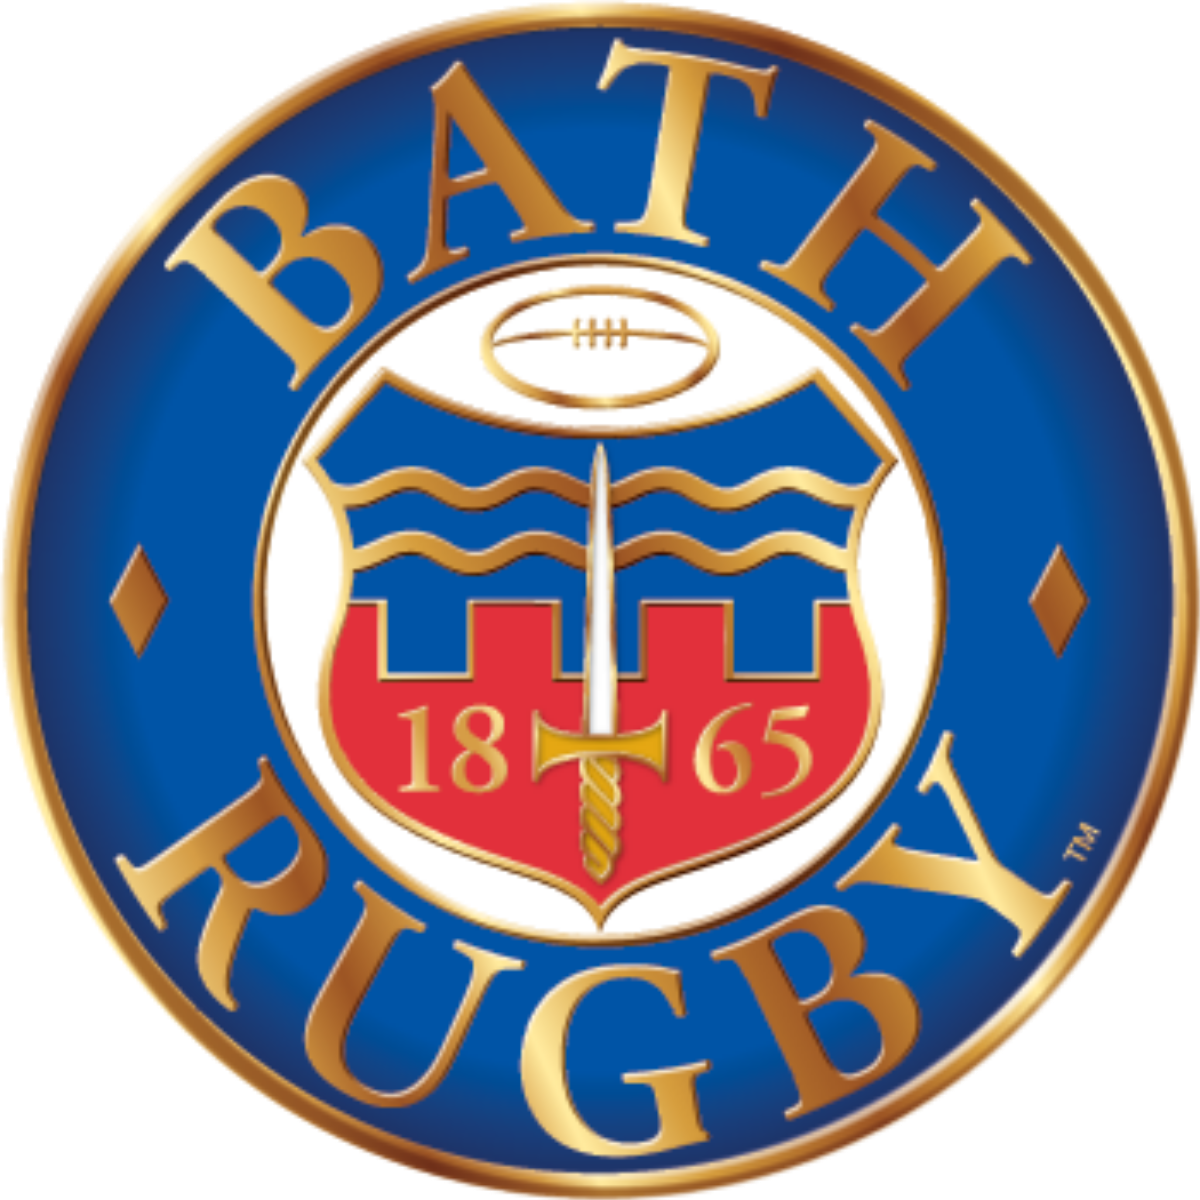 Logo Bath